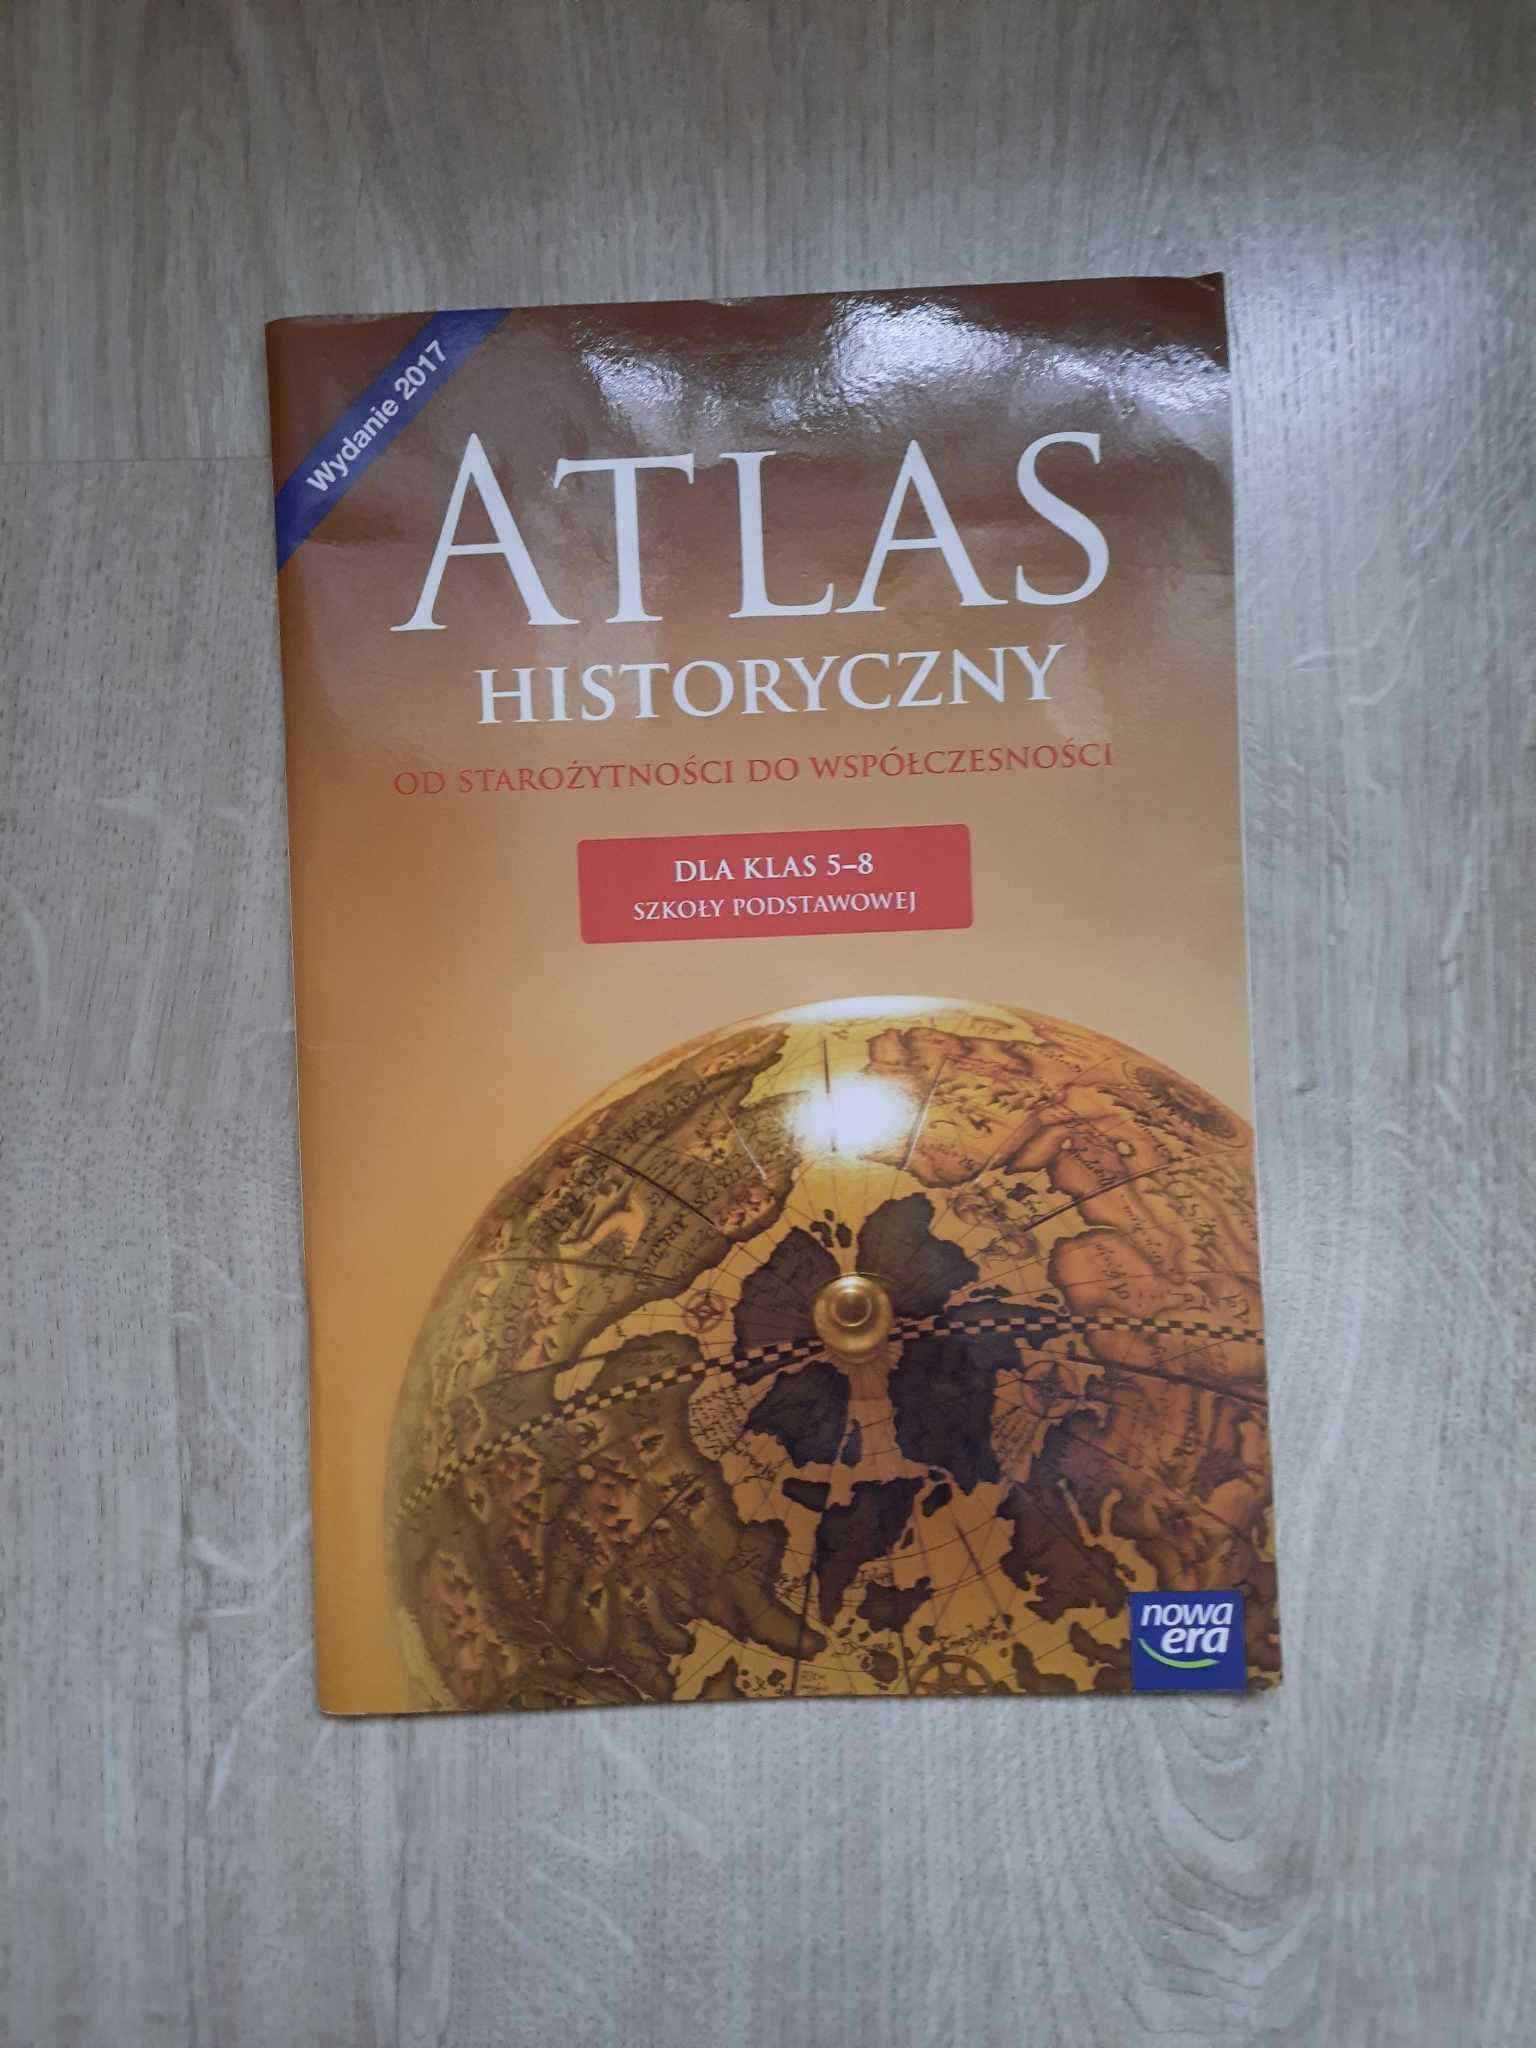 Atlas Historyczny "Od starożytności do współczesności" dla klas 5-8